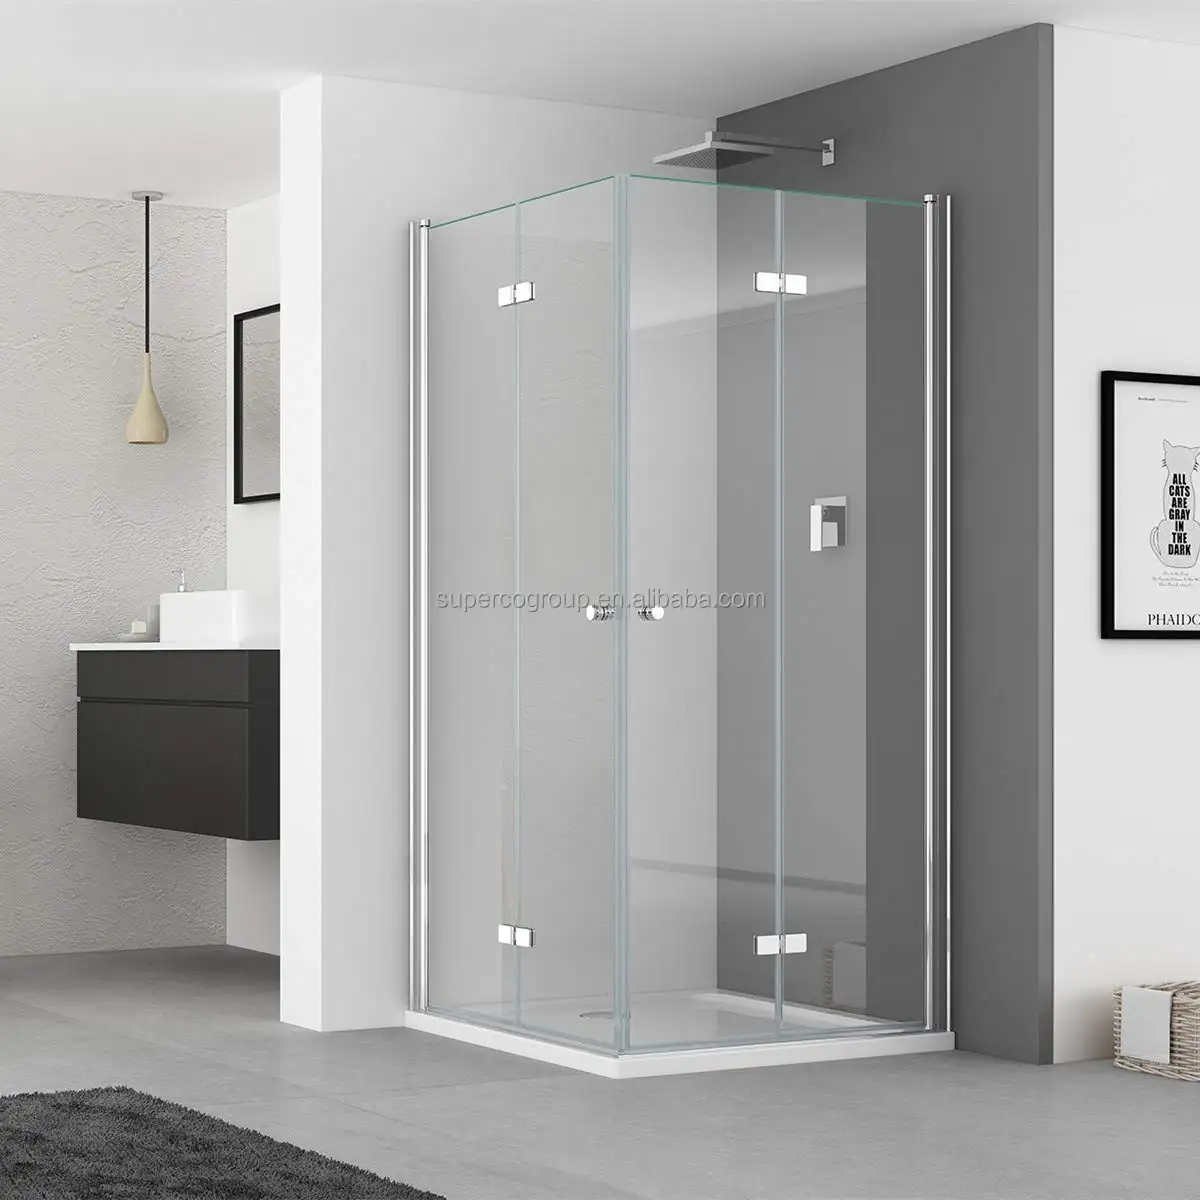 Europäisches Deutschland Hot Selling Badezimmer Klapp scharniere Türen Duschraum 5/6mm gehärtetes Glas Easy Clean Duschkabine